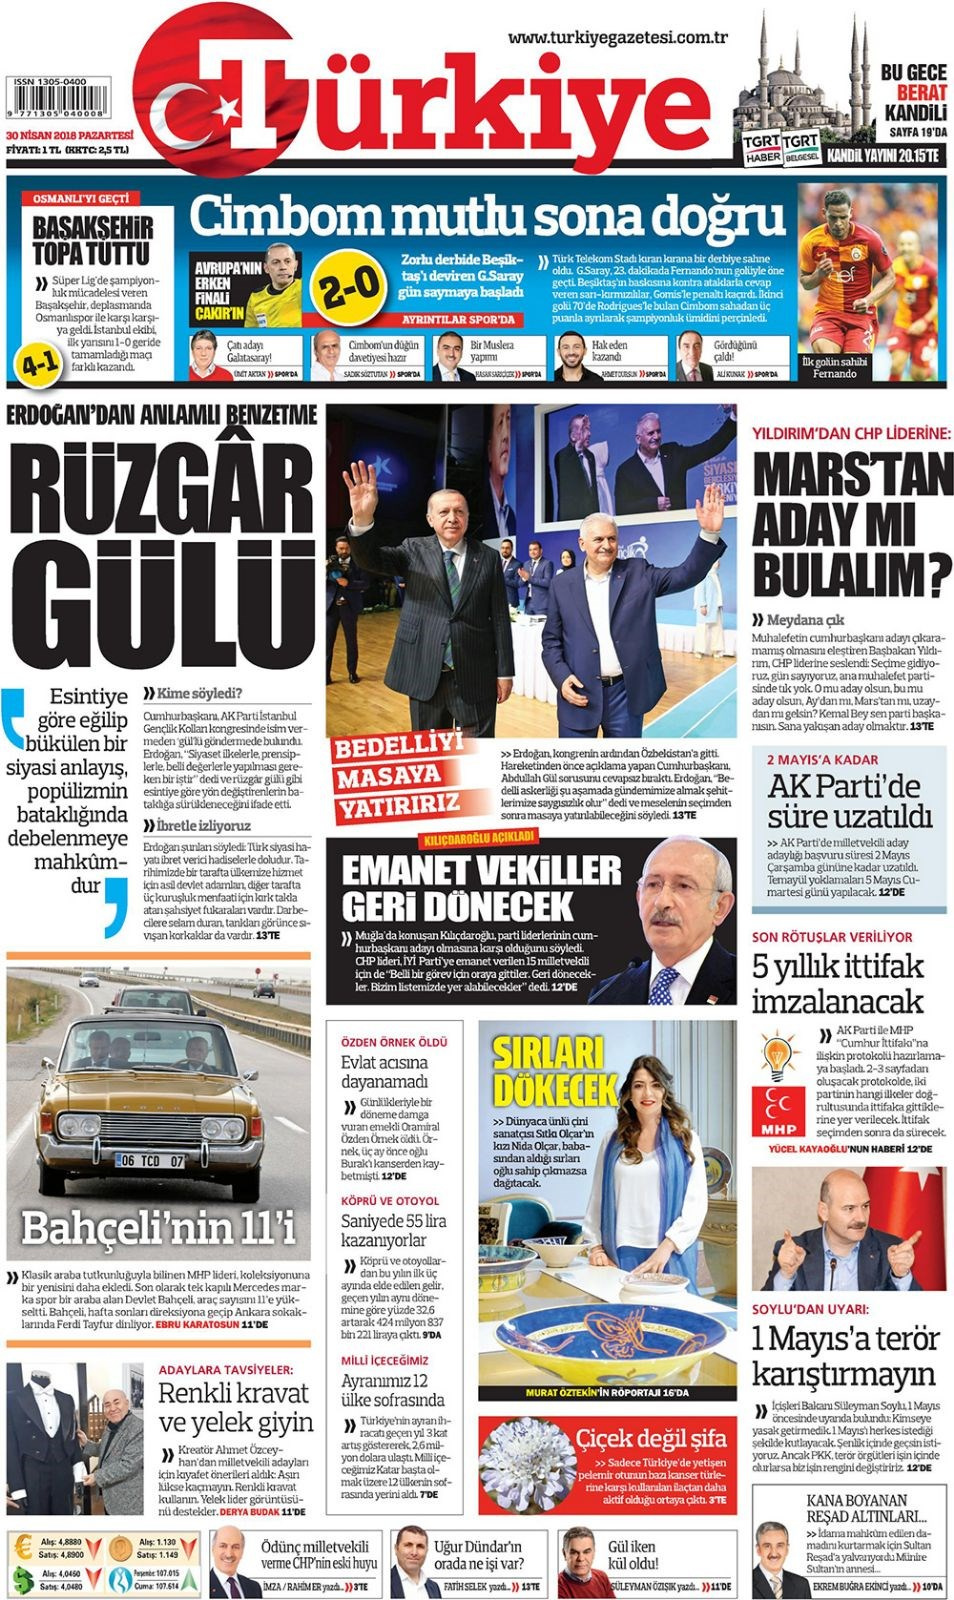 Gazete manşetleri 30 Nisan 2018 Hürriyet - Sözcü - Fanatik